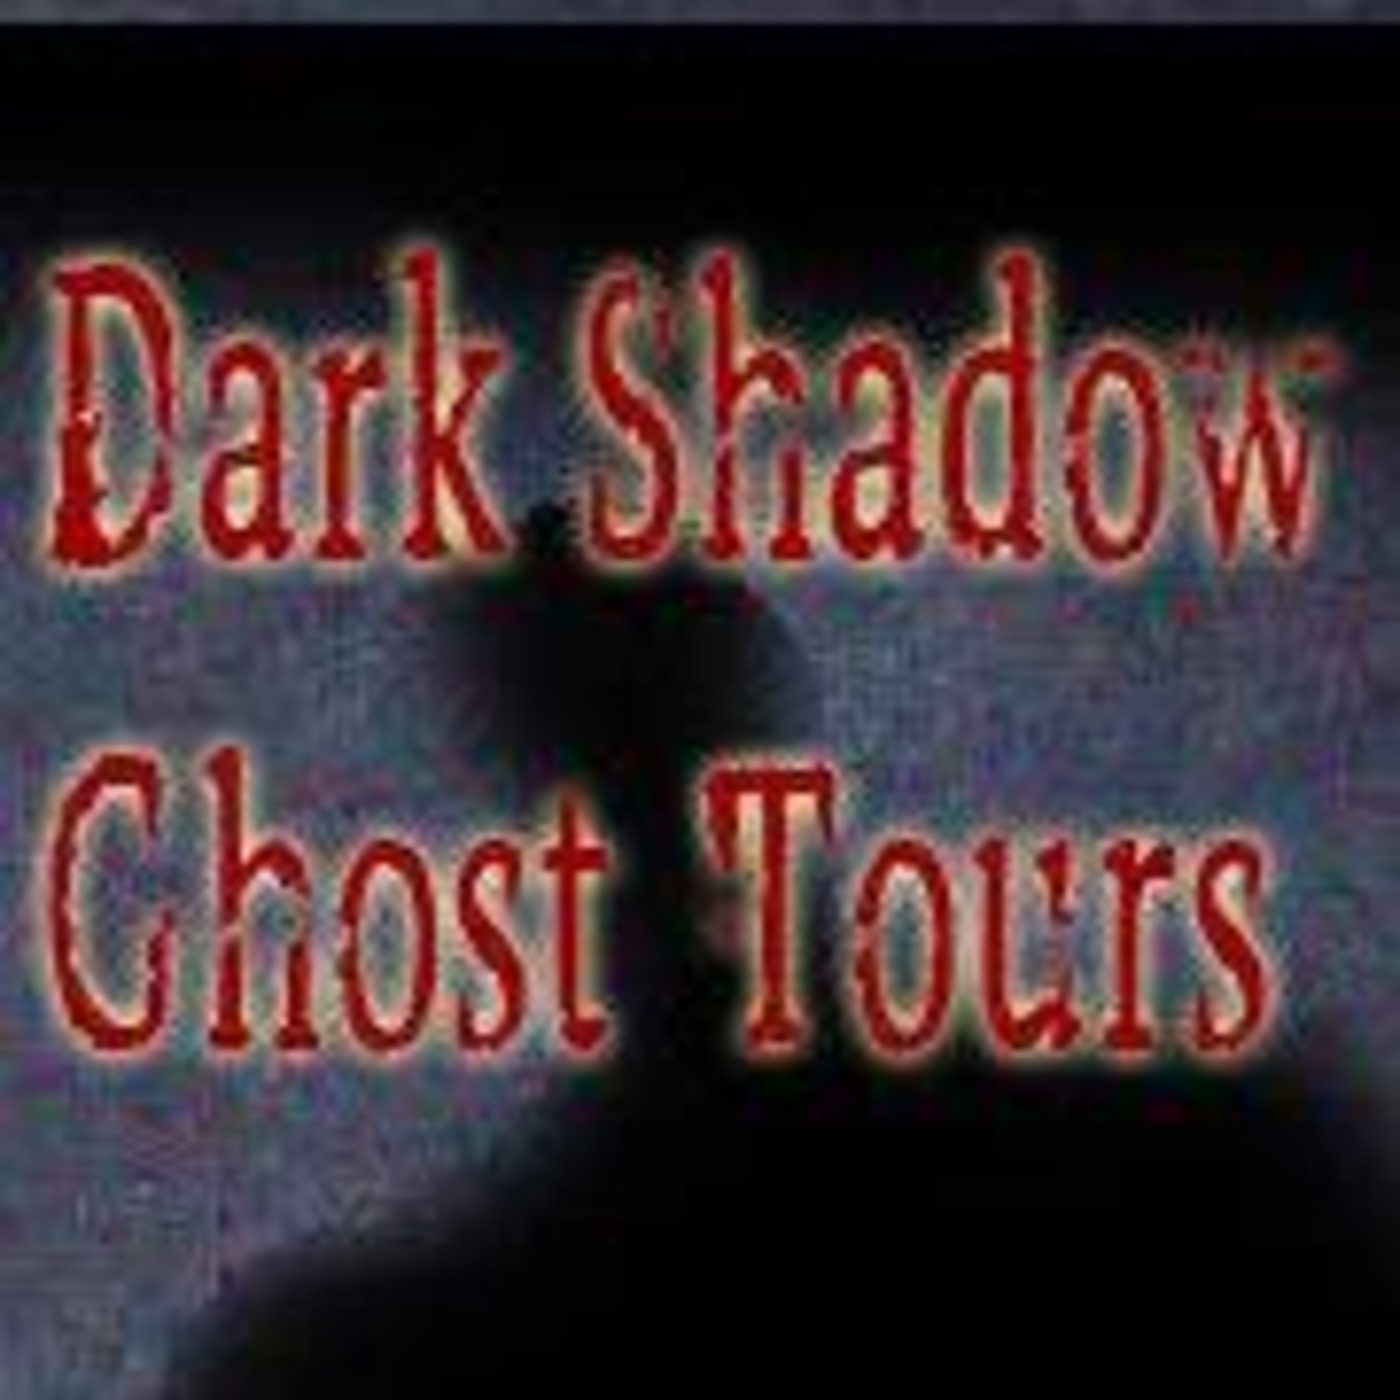 1/3/2016 Dark Shadows Ghost Tours